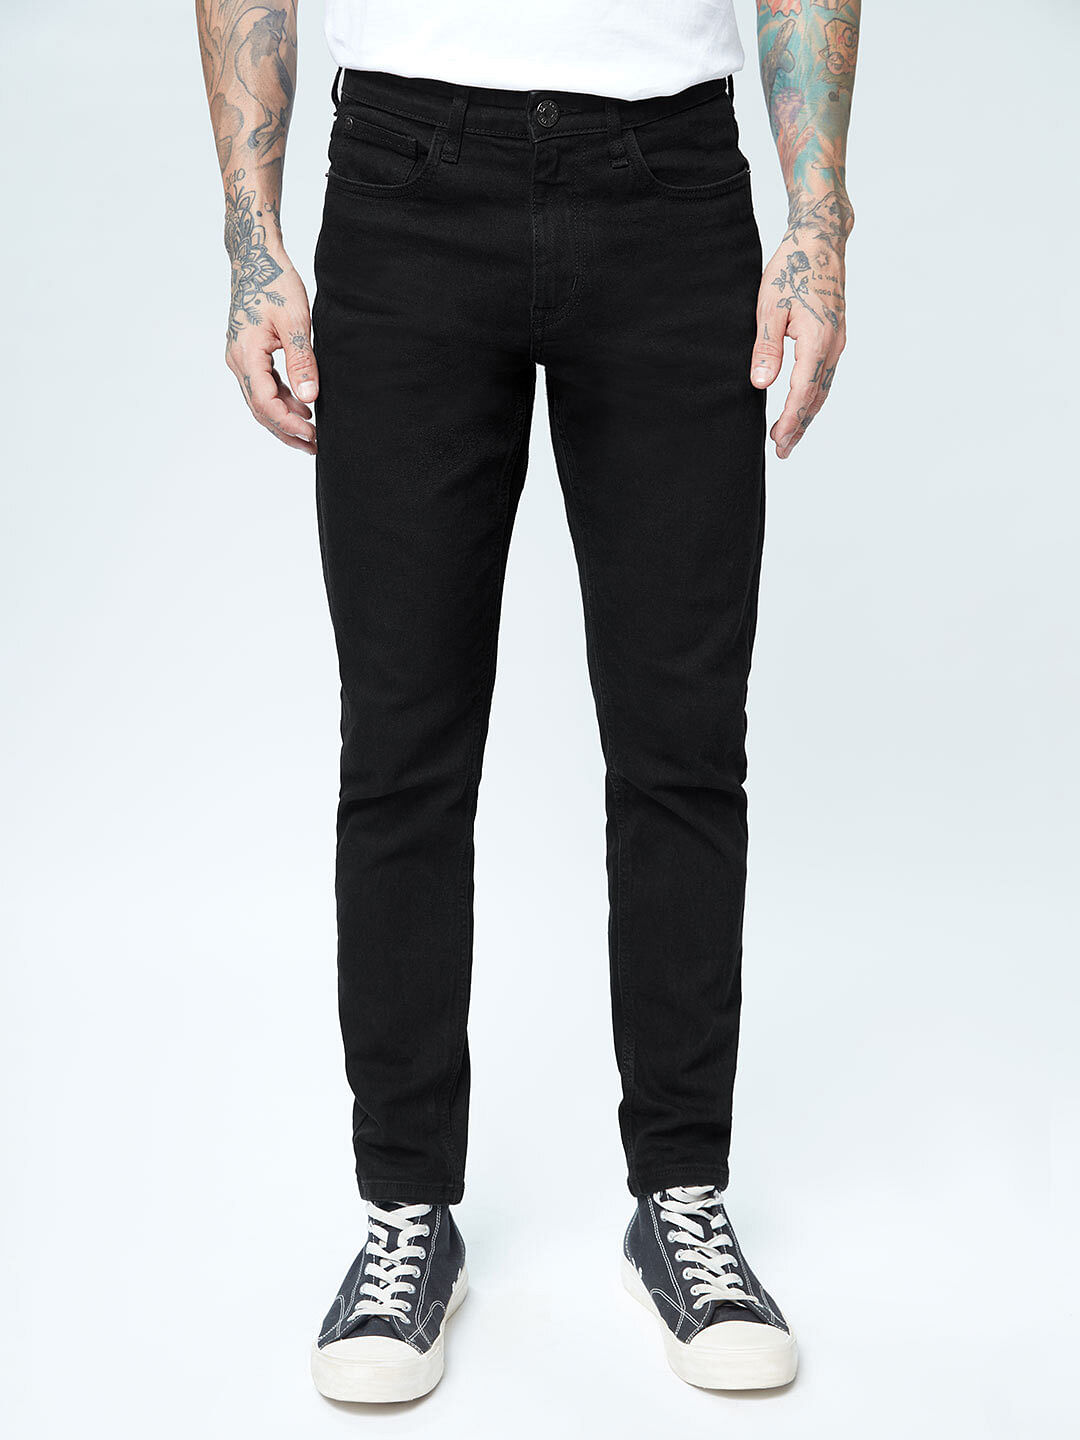 Buy Solids: Black (Slim Fit) Men Jeans Online